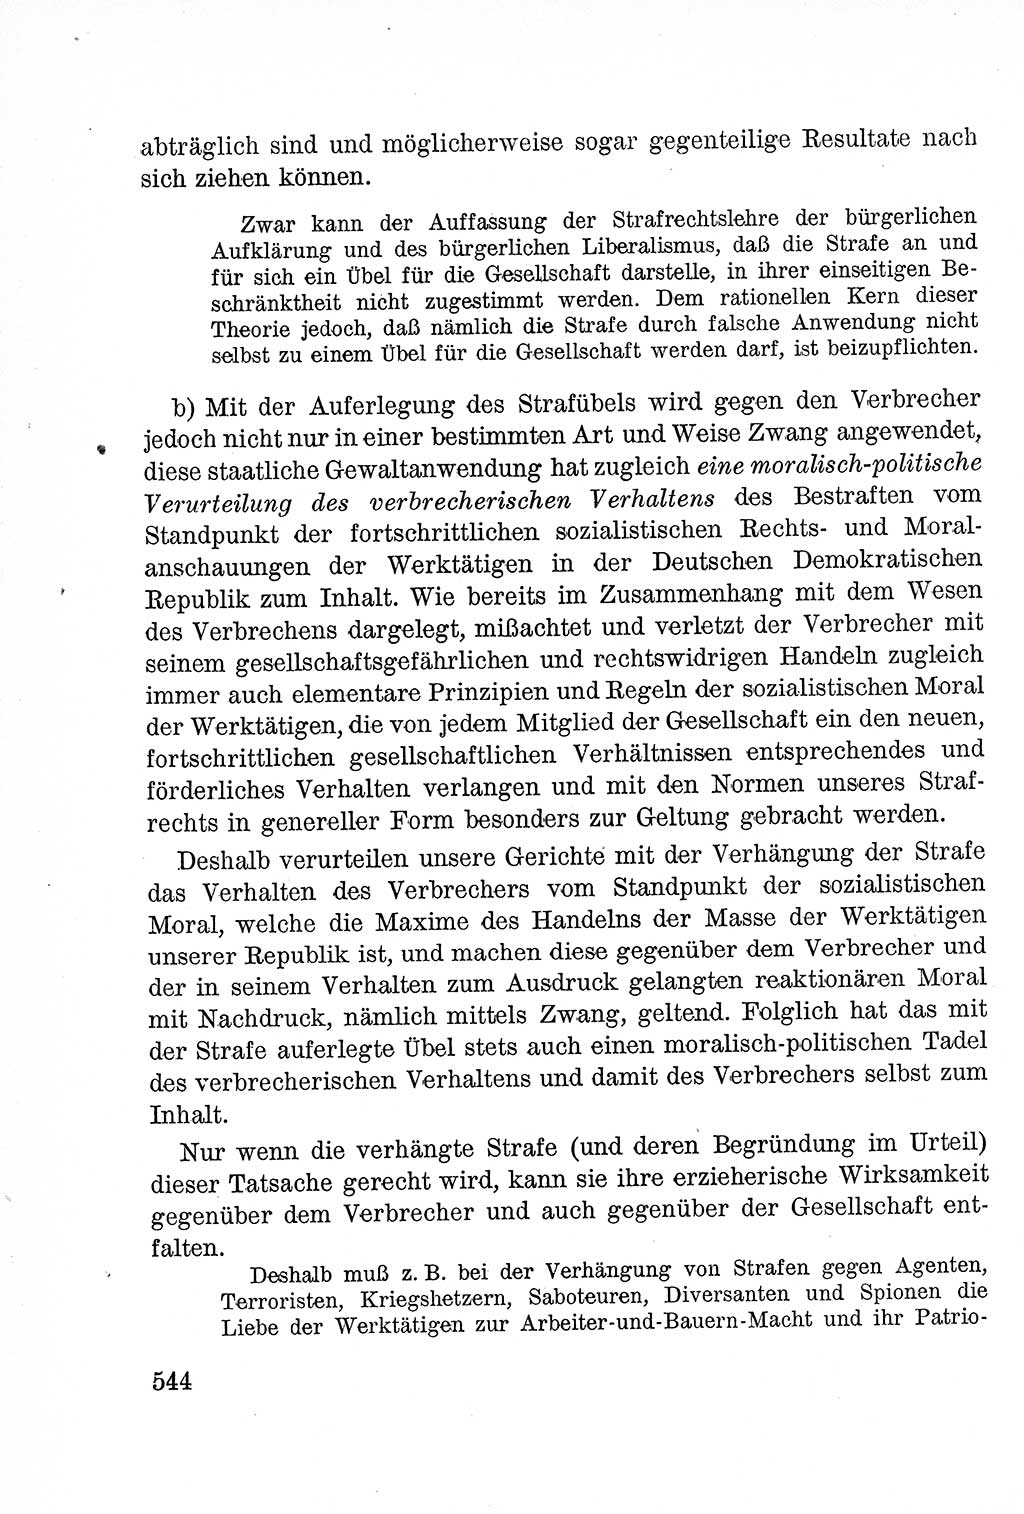 Lehrbuch des Strafrechts der Deutschen Demokratischen Republik (DDR), Allgemeiner Teil 1957, Seite 544 (Lb. Strafr. DDR AT 1957, S. 544)